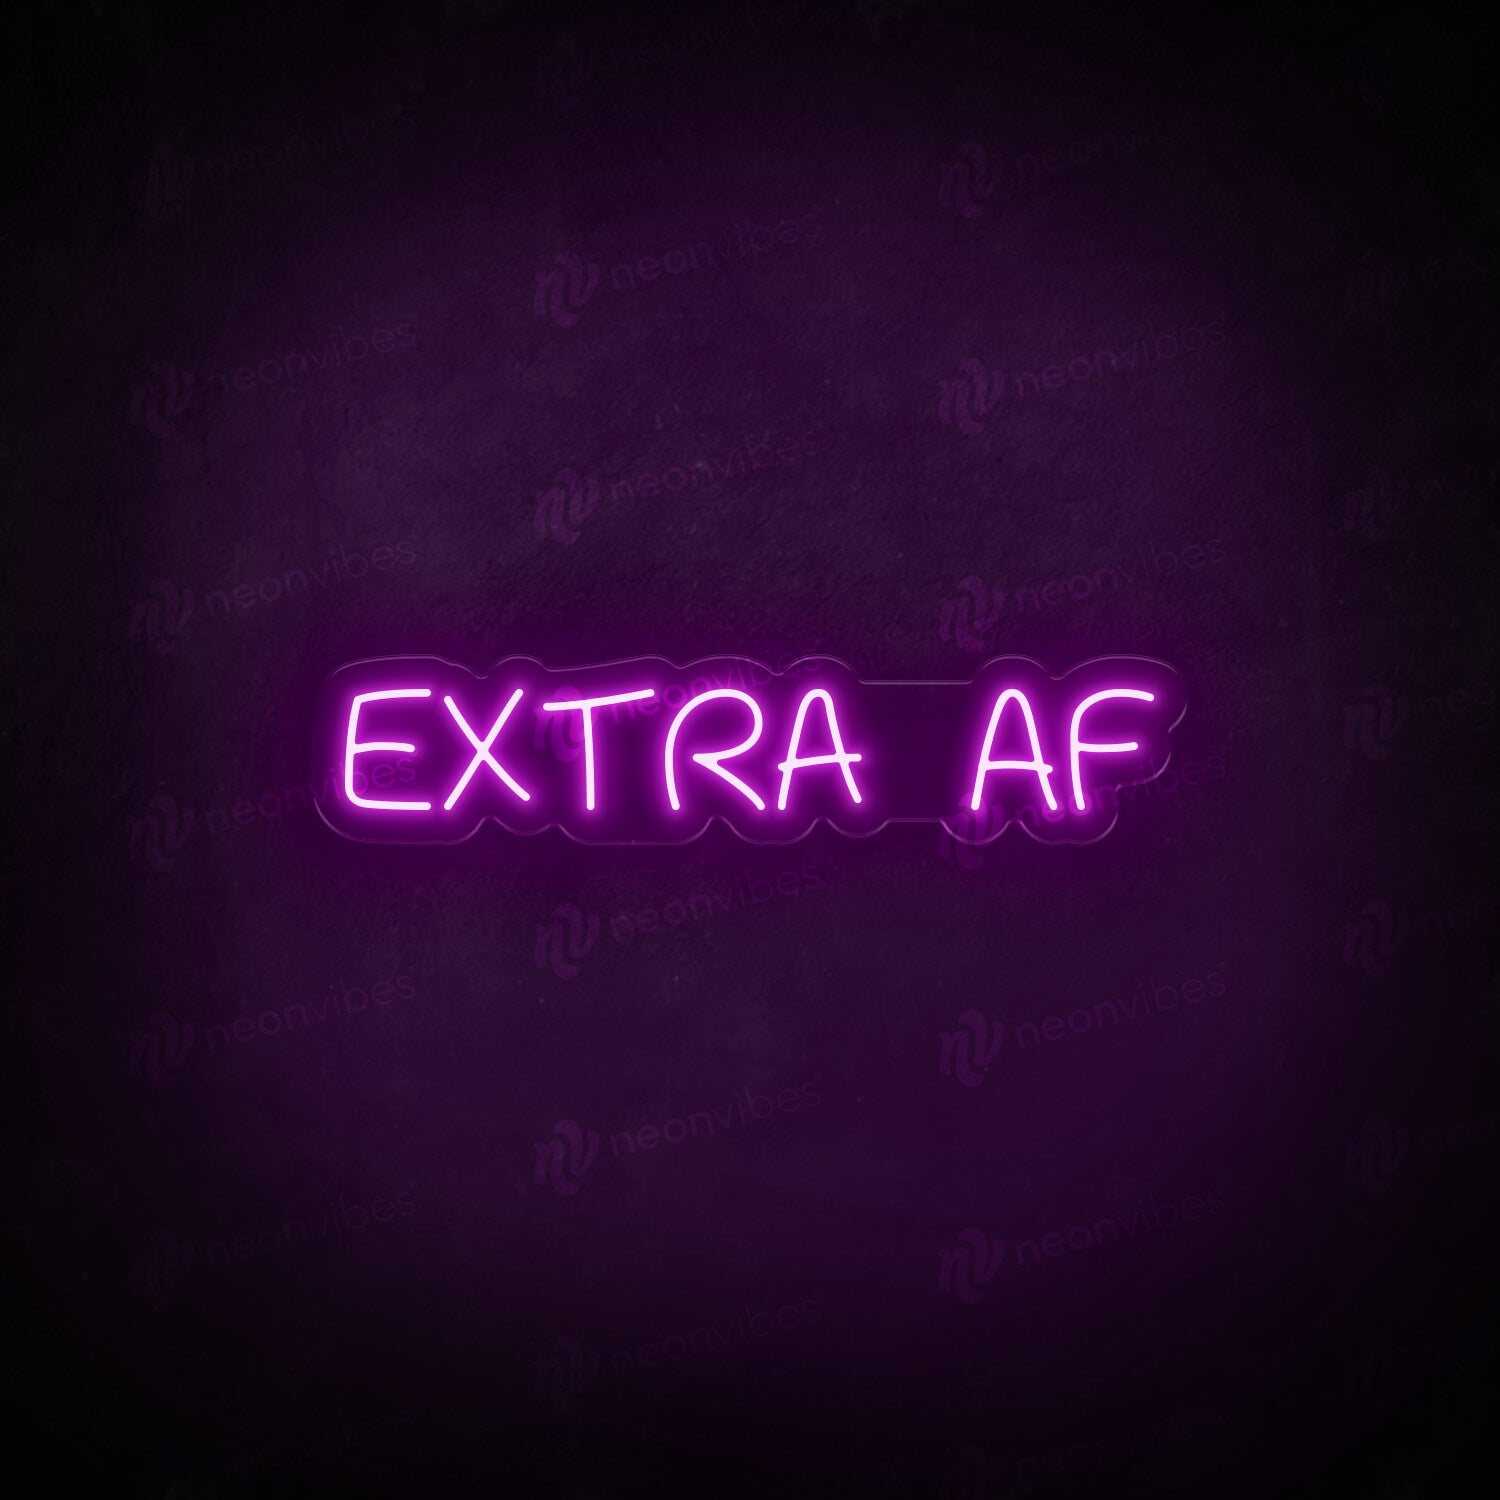 Extra AF neon sign